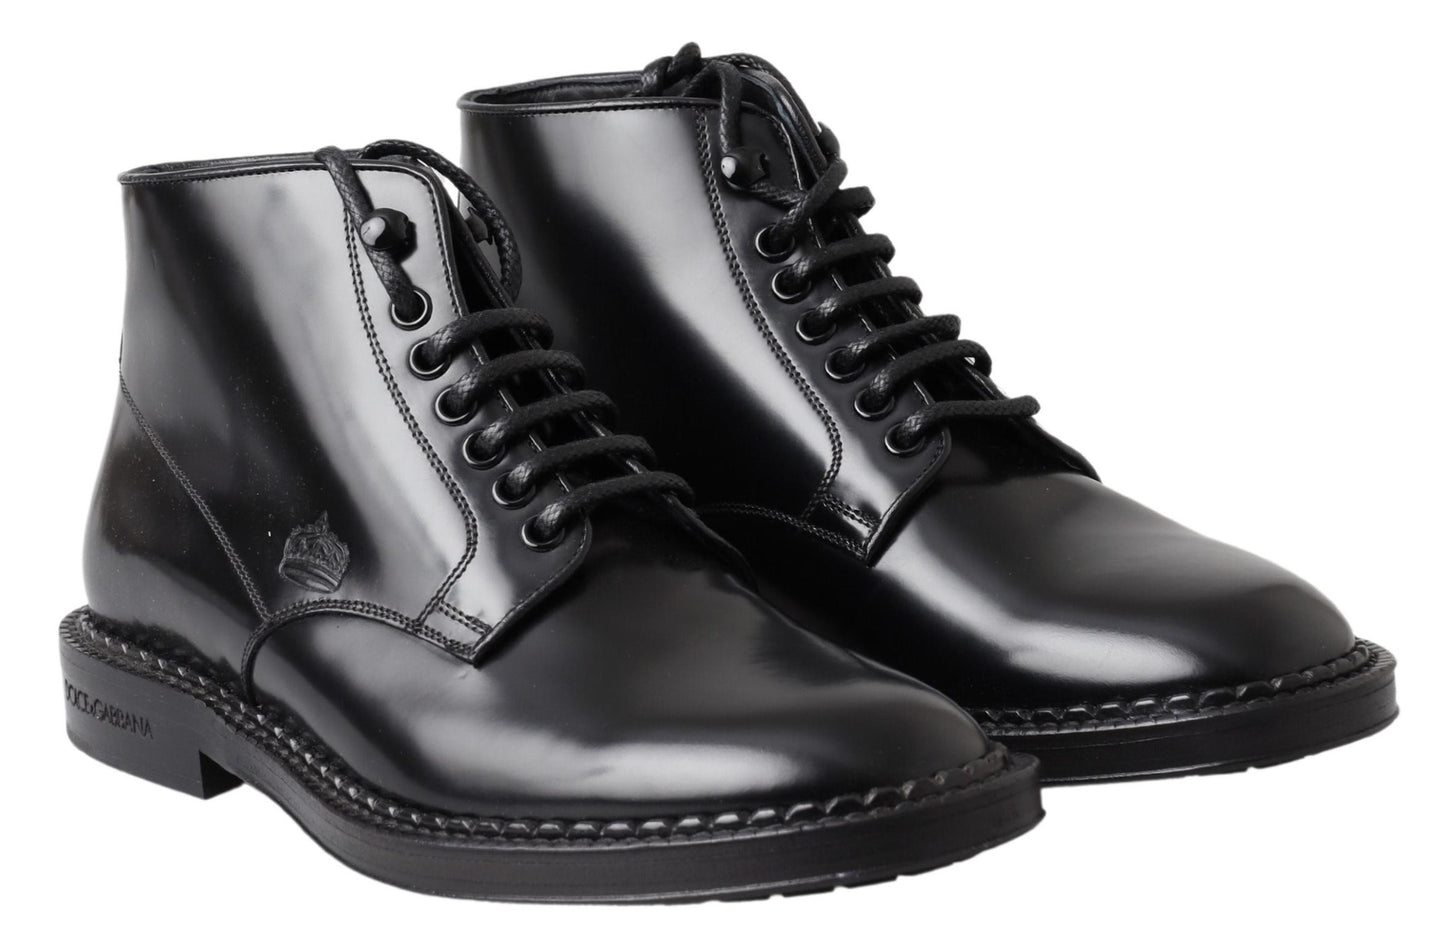 Dolce & Gabbana en cuir noir hommes bottes courtes chaussures à lacets